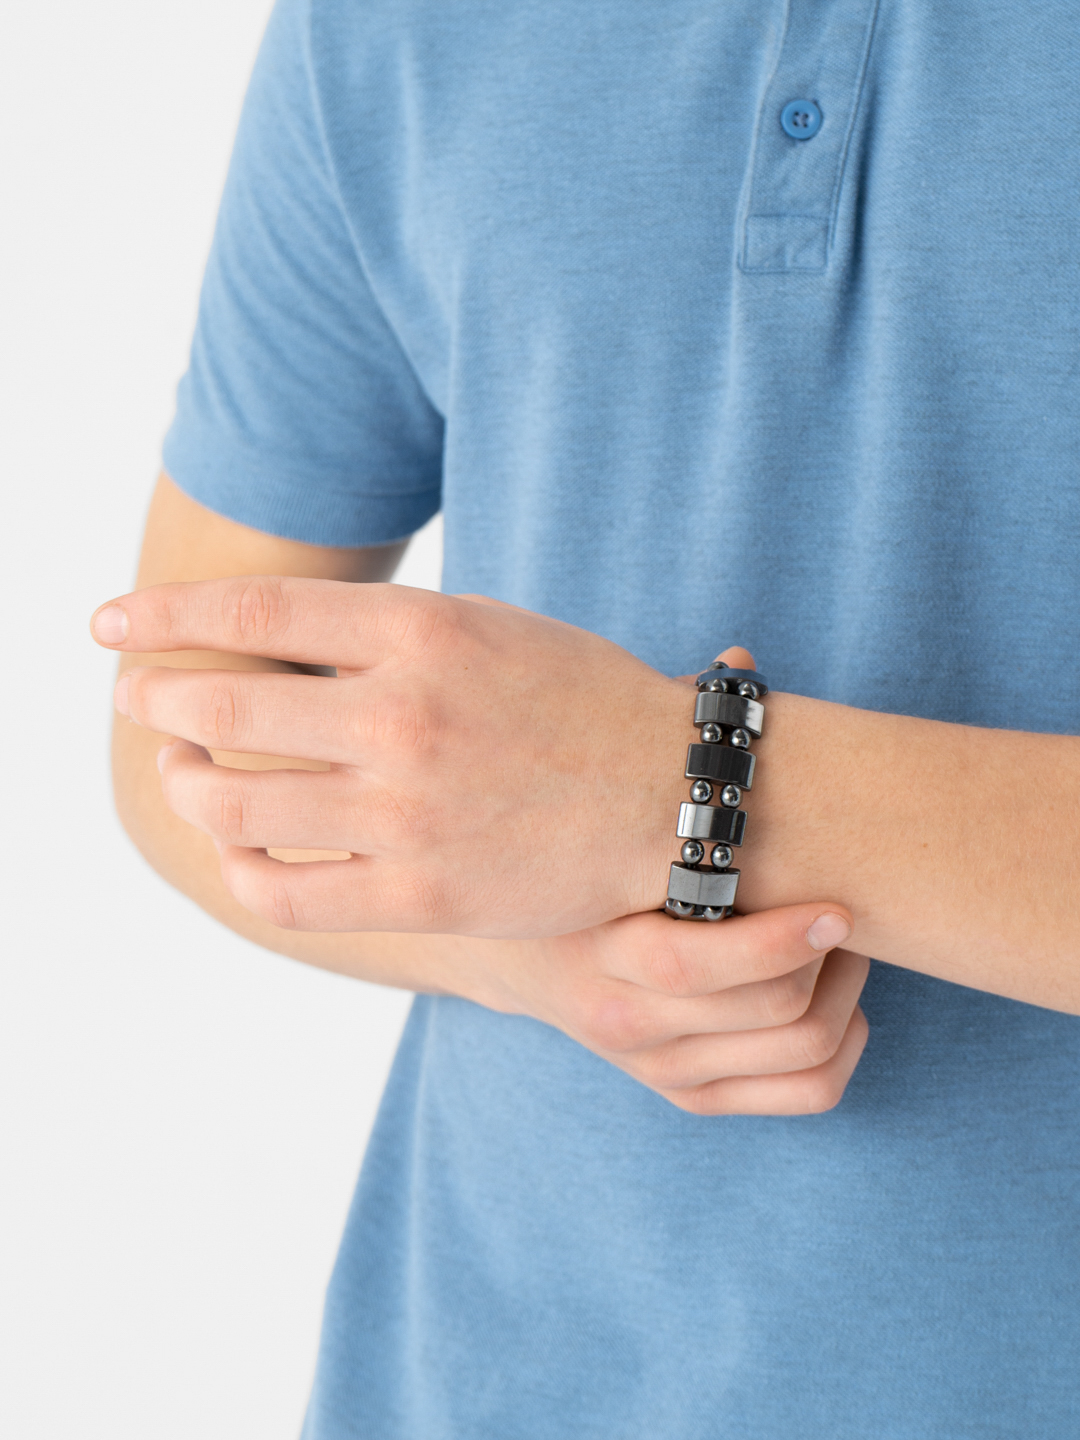 Магнитный гематитовый браслет от давления купить по цене 200 ₽ винтернет-магазине KazanExpress